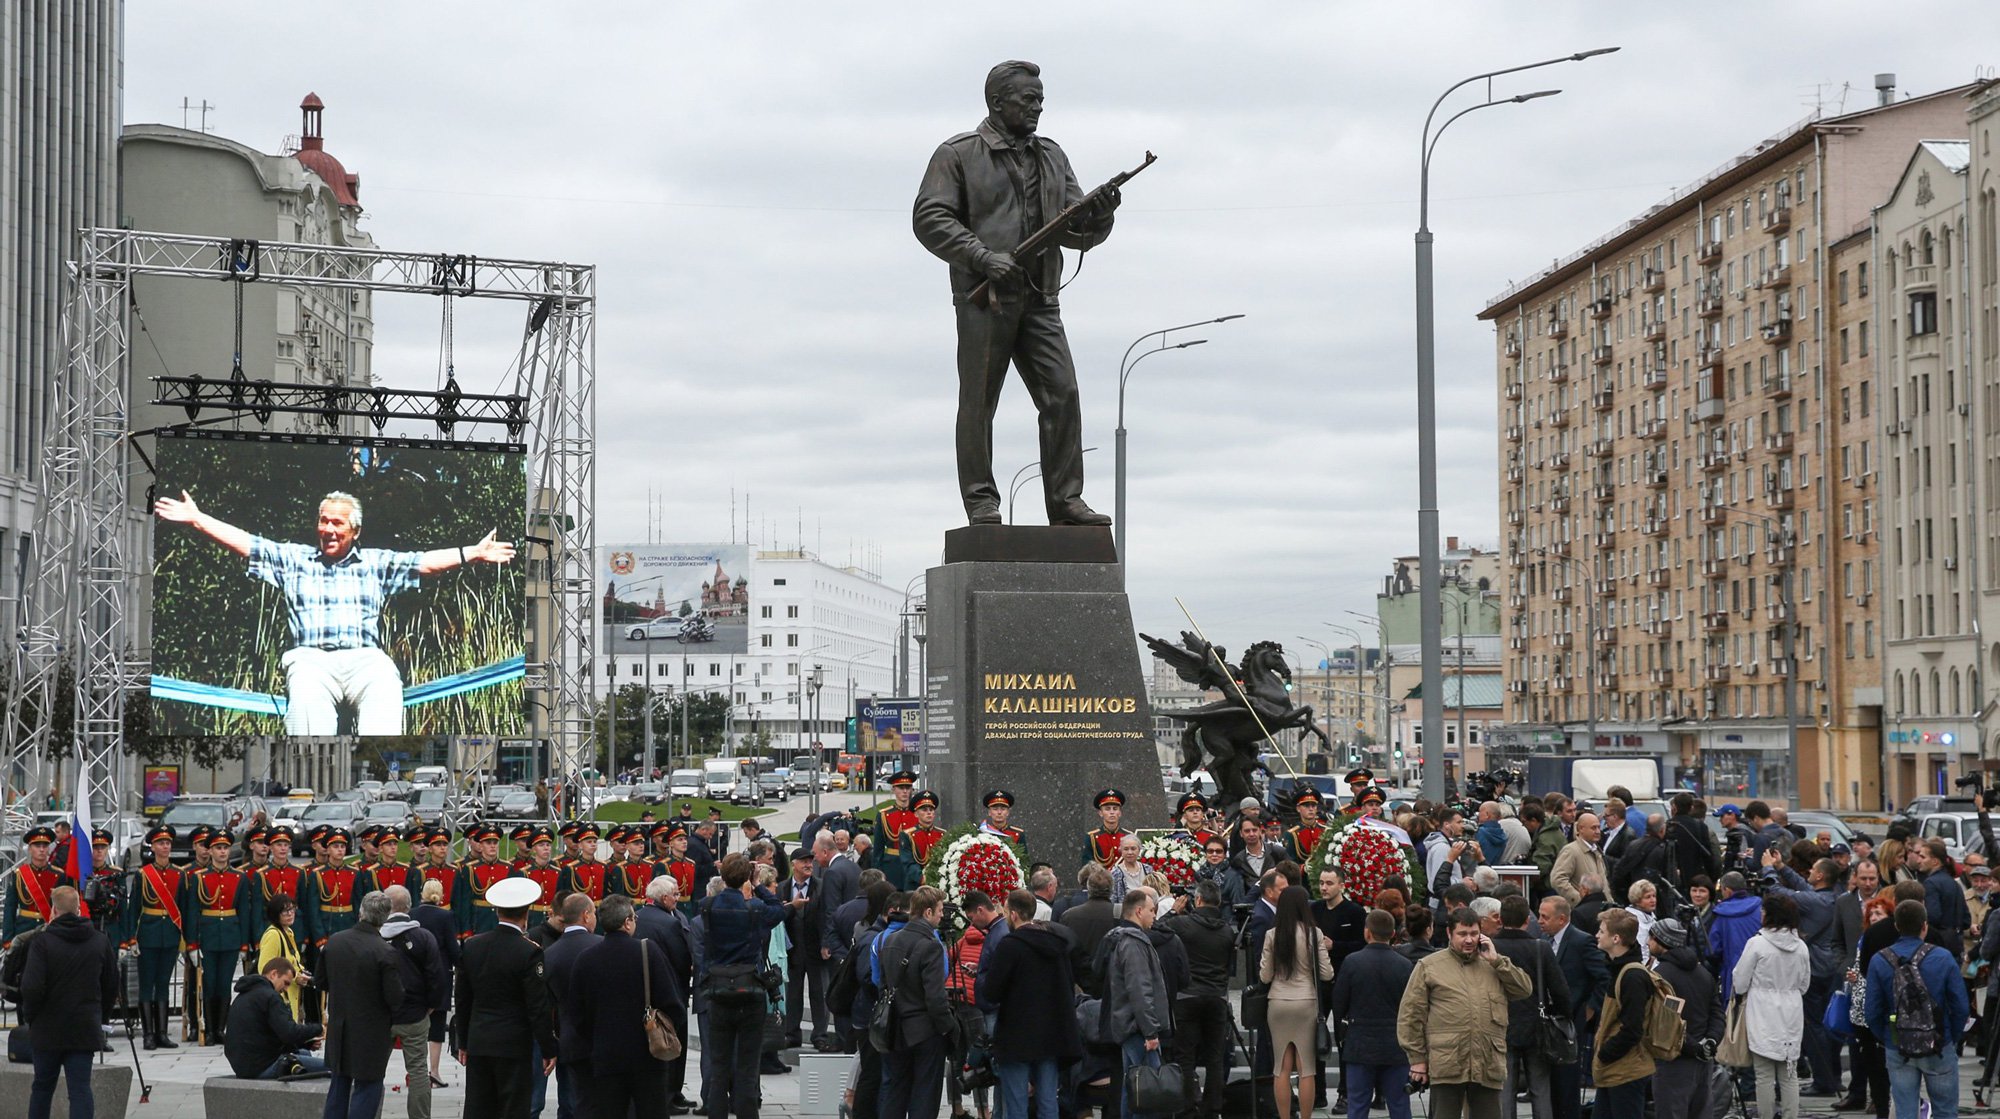 Dailystorm - Активизировались «негодяи и черти» — скульптор о хайпе вокруг памятника Калашникову